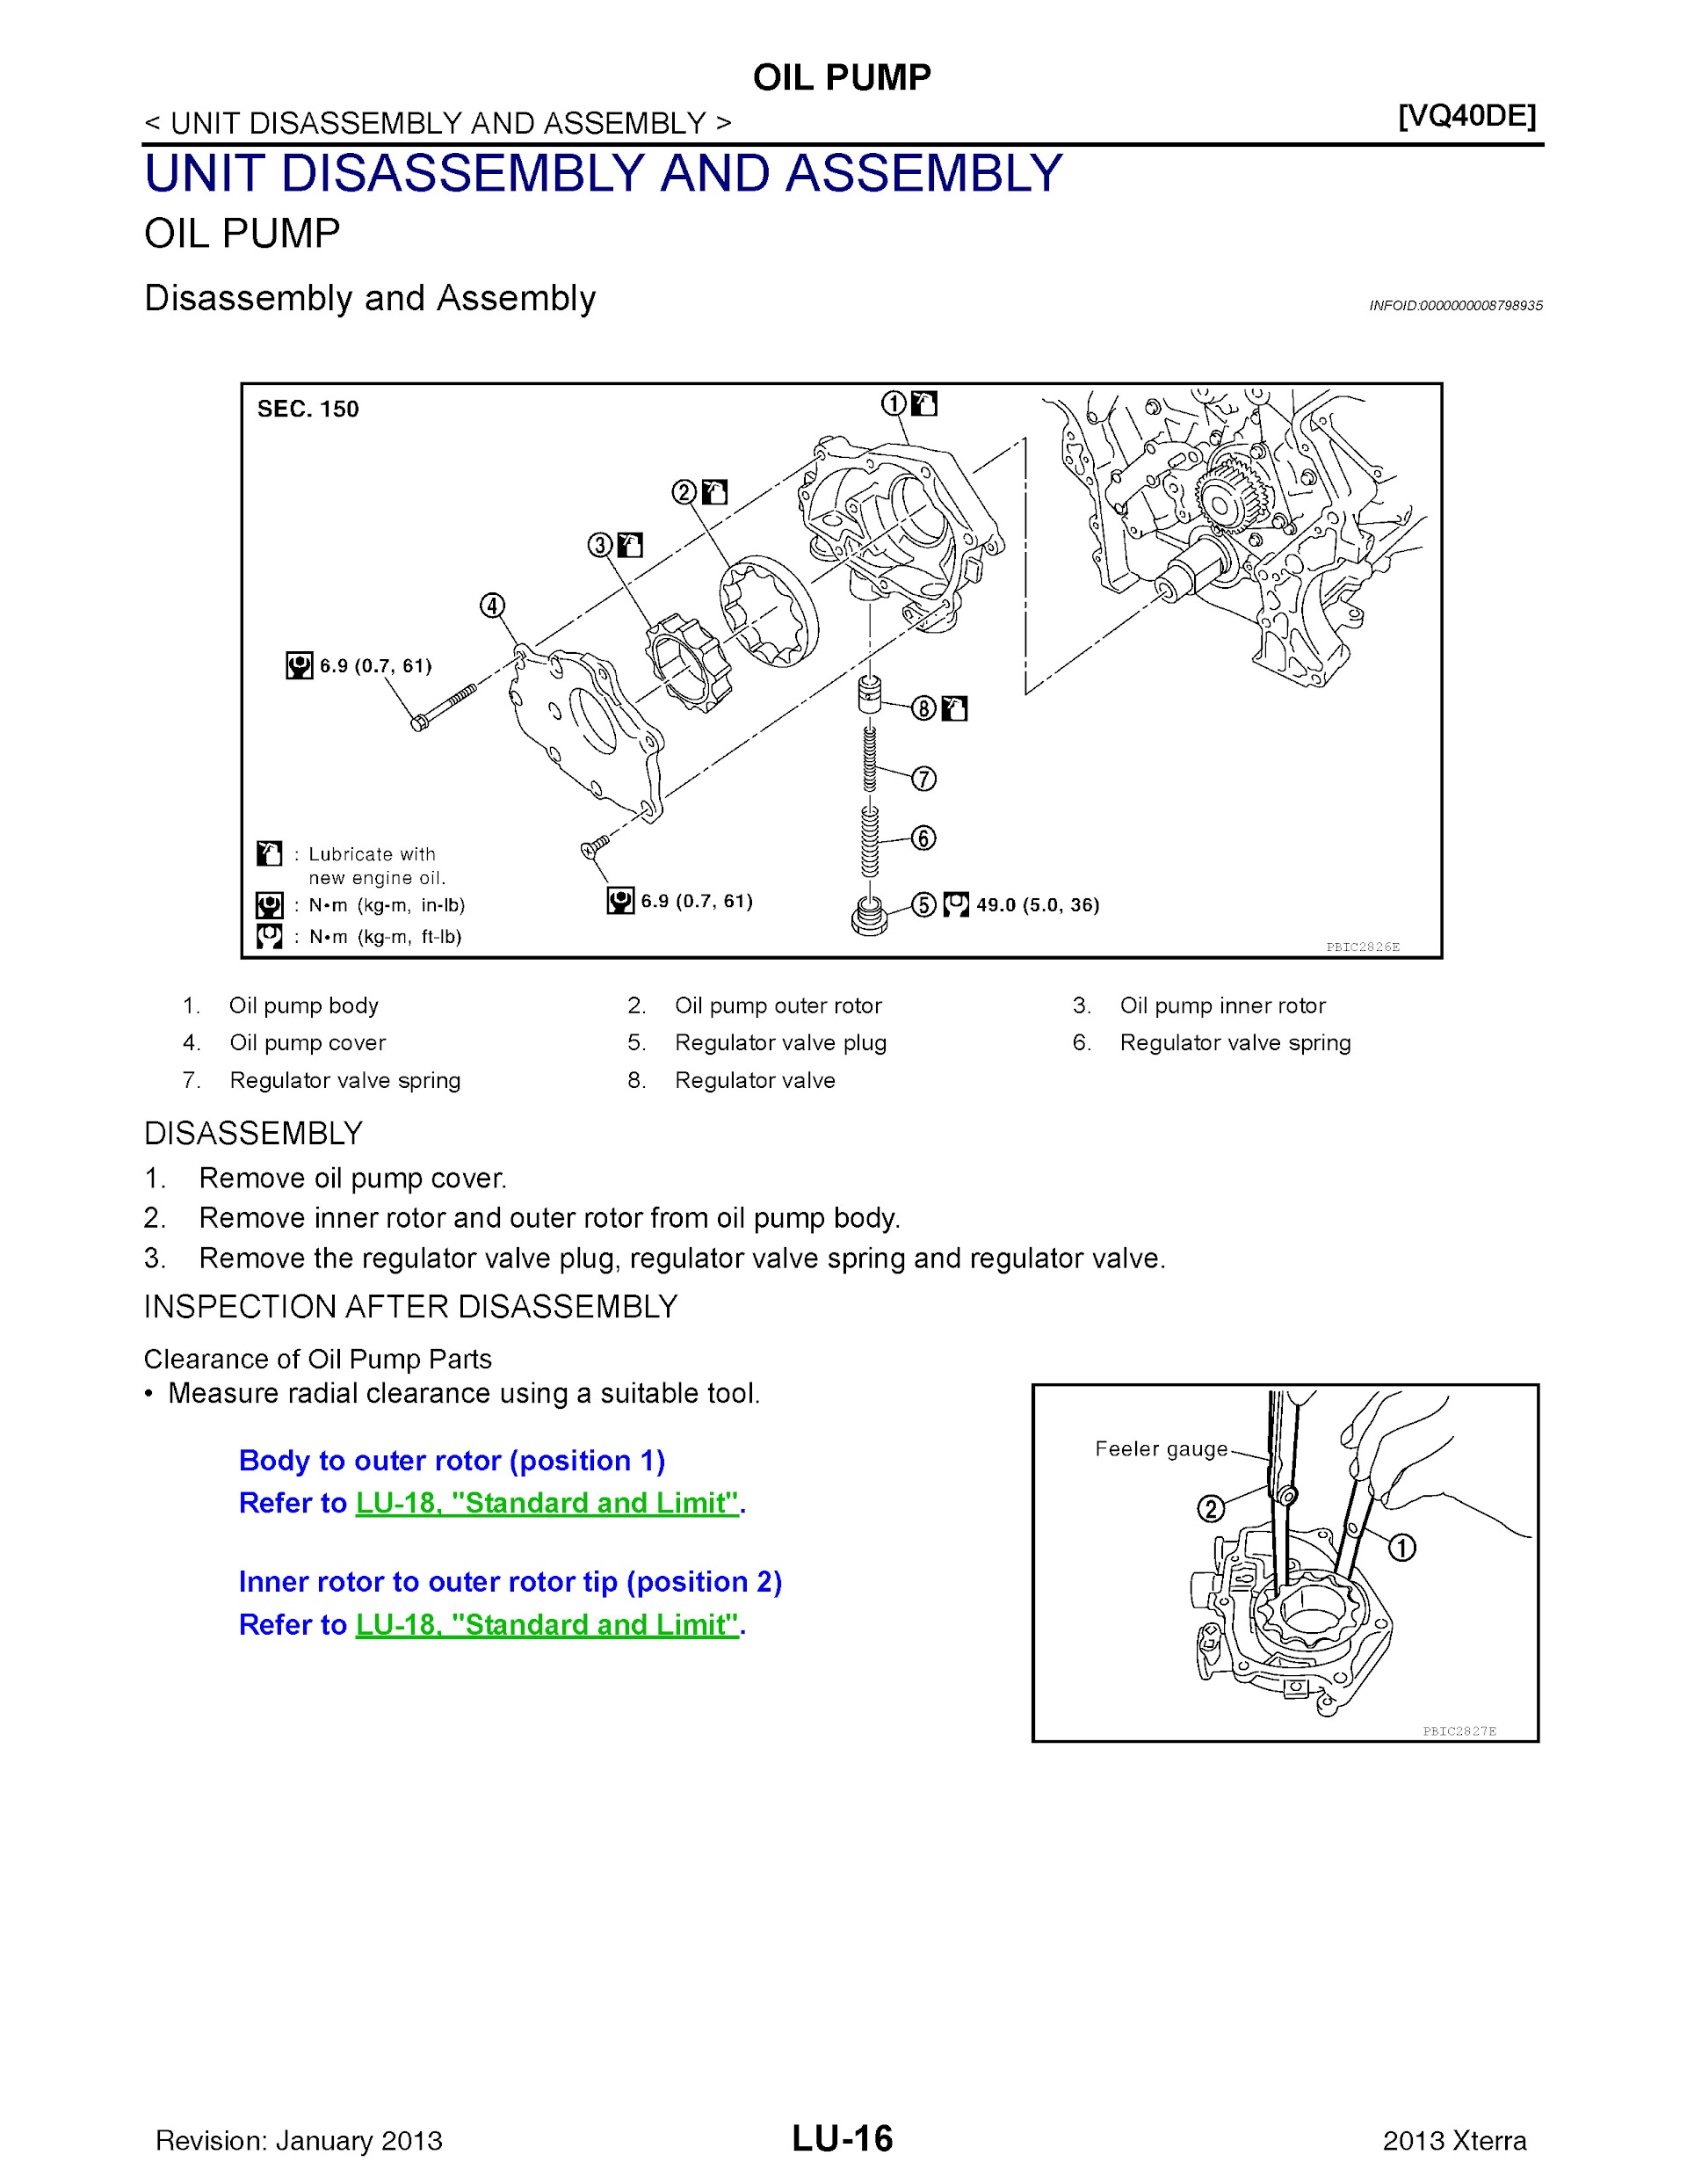 Download 2013 Nissan XTerra Repair Manual.